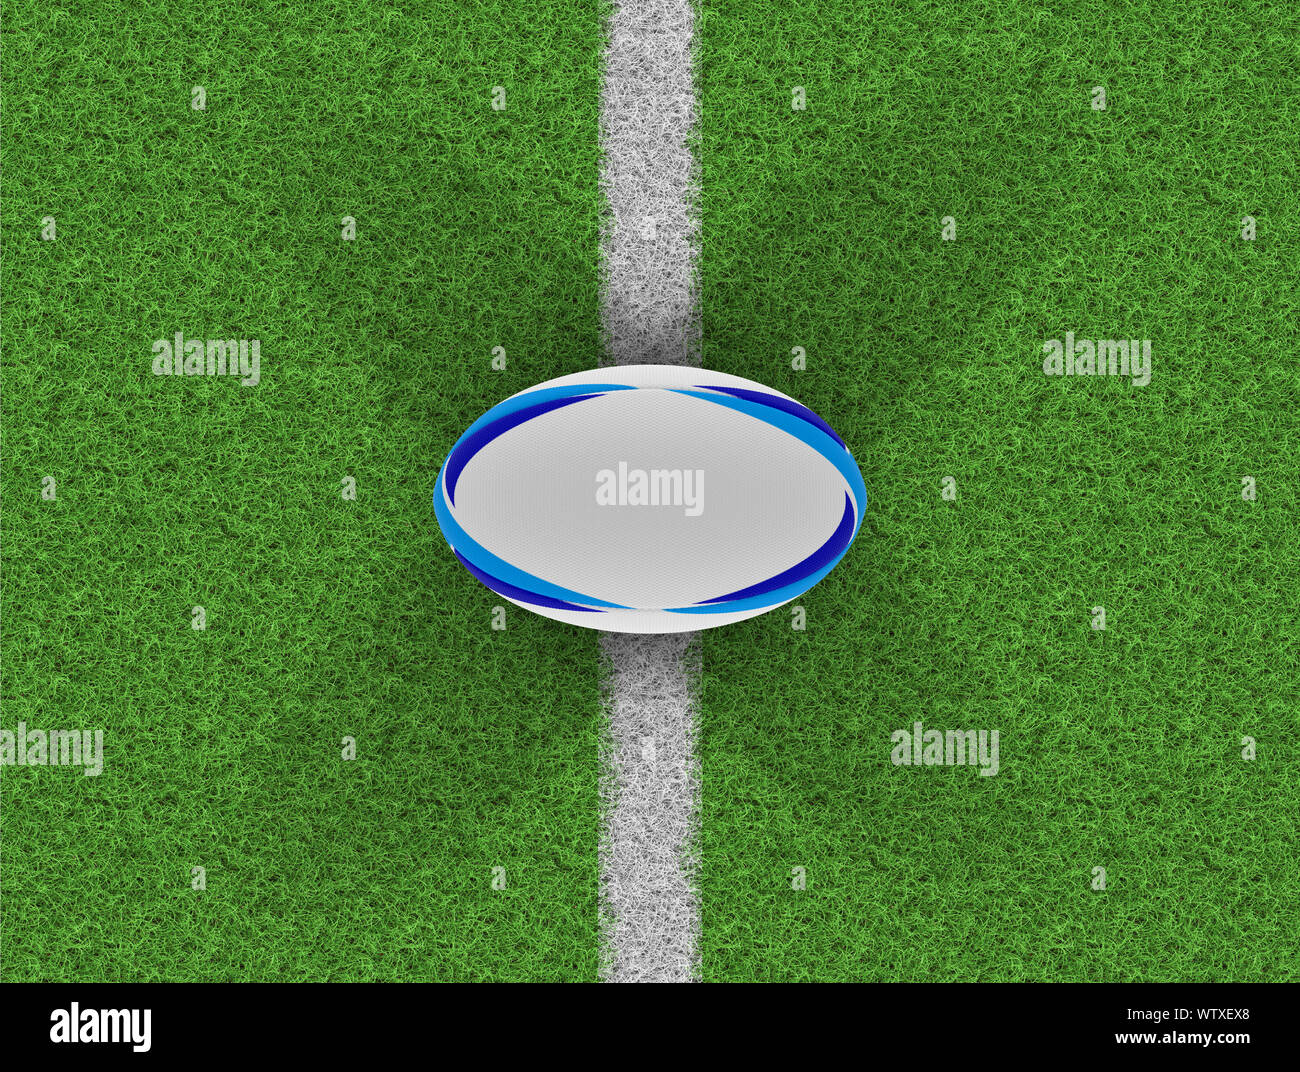 Una vista superior de un balón de rugby con textura blanca con elementos de diseño azul sobre un césped con marcas - 3D Render Foto de stock